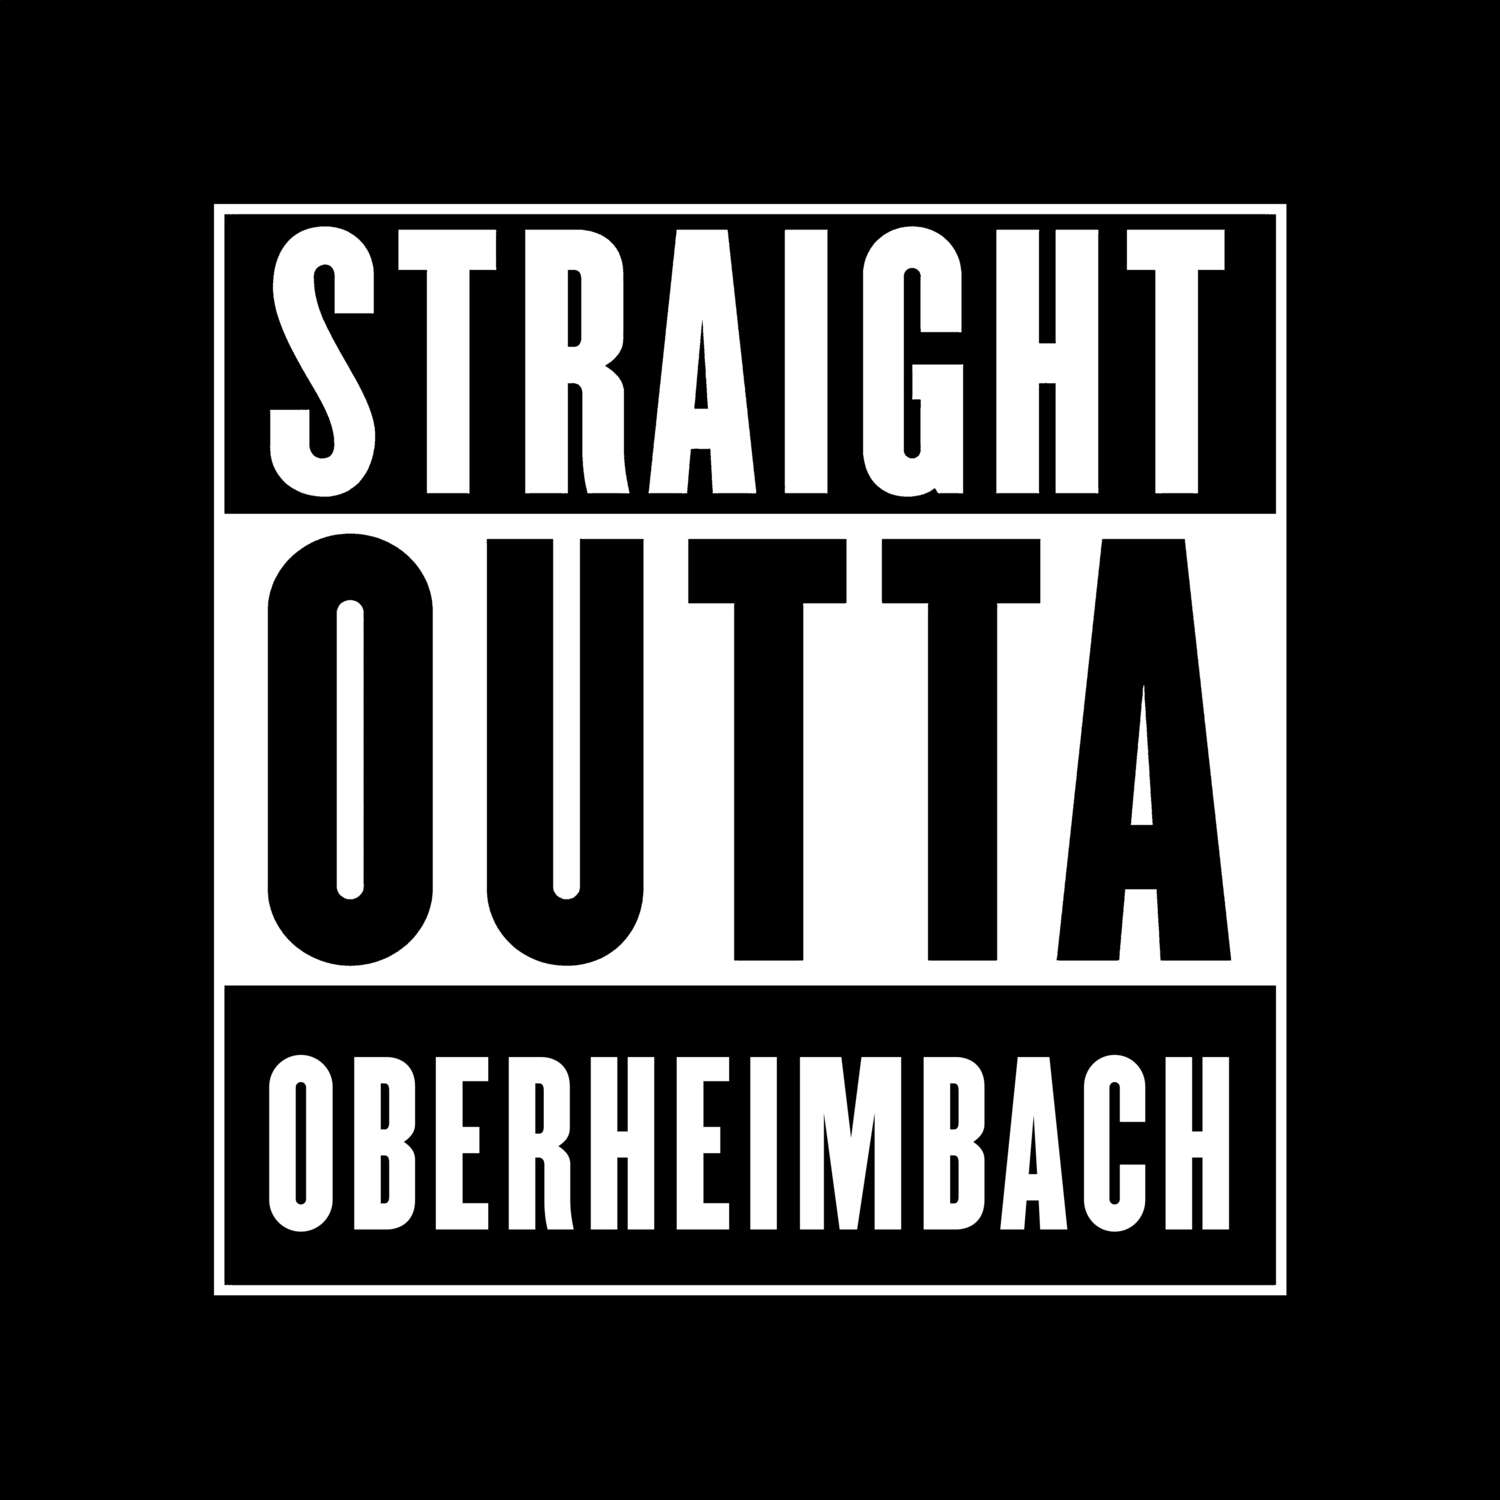 Oberheimbach T-Shirt »Straight Outta«